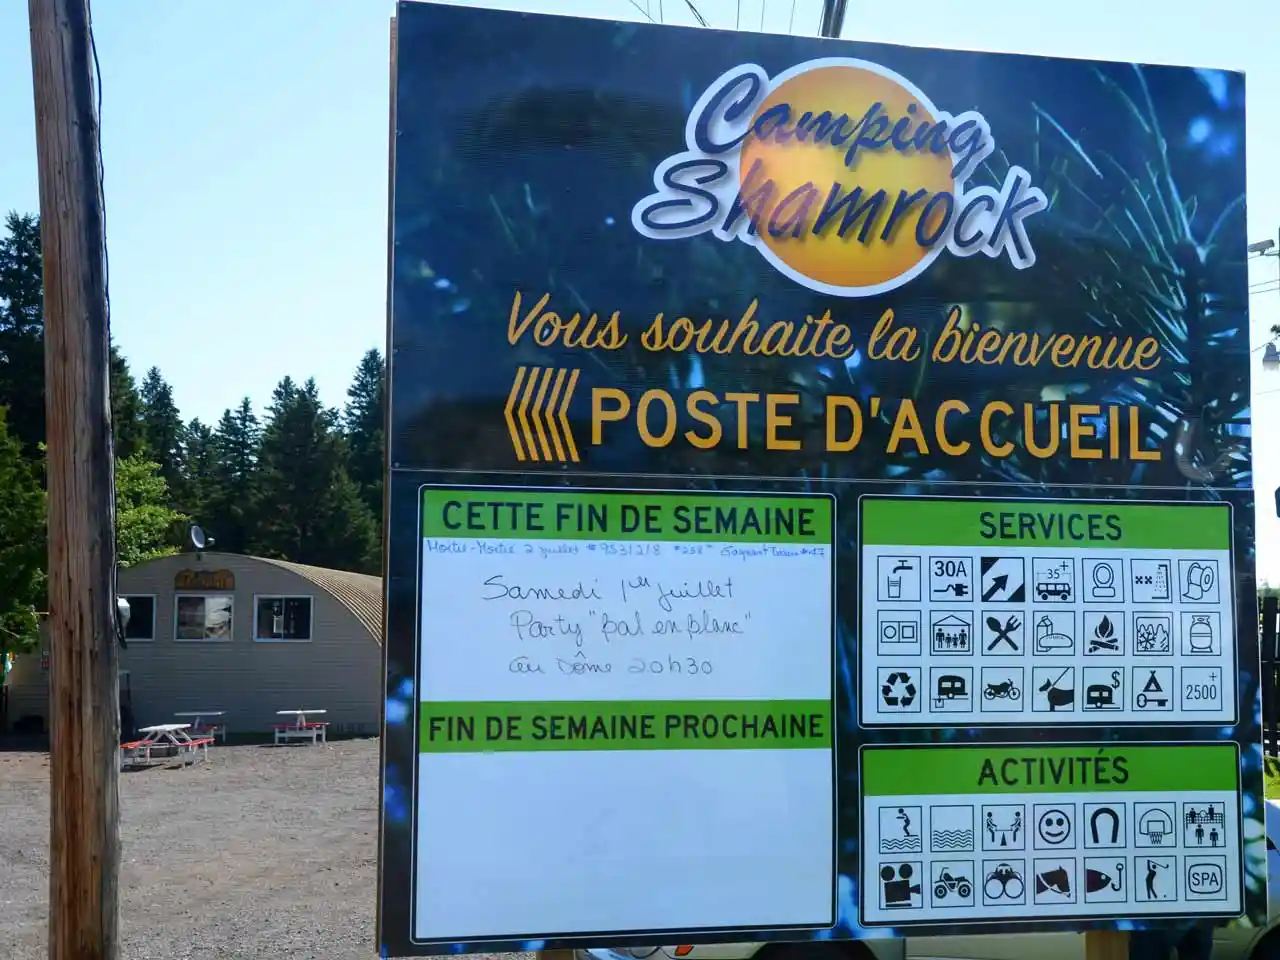 Camping Shamrock Signage panels 2023